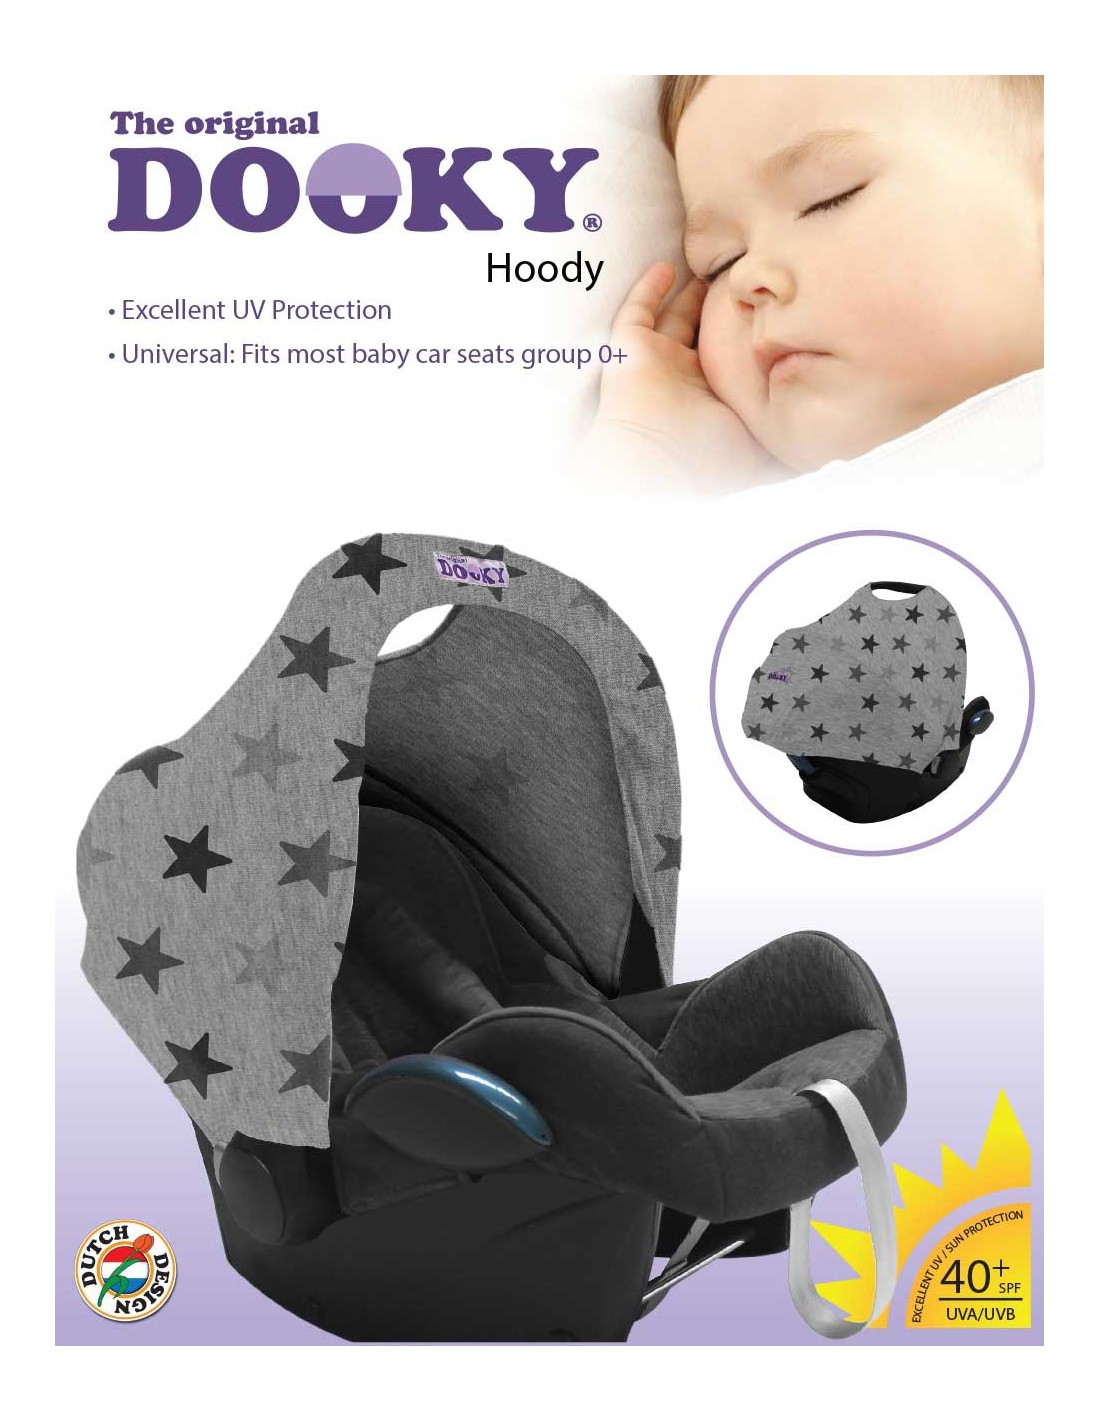 Dooky Hoody Sonnenschutz für Babyschale Design Sterne Grey Stars 